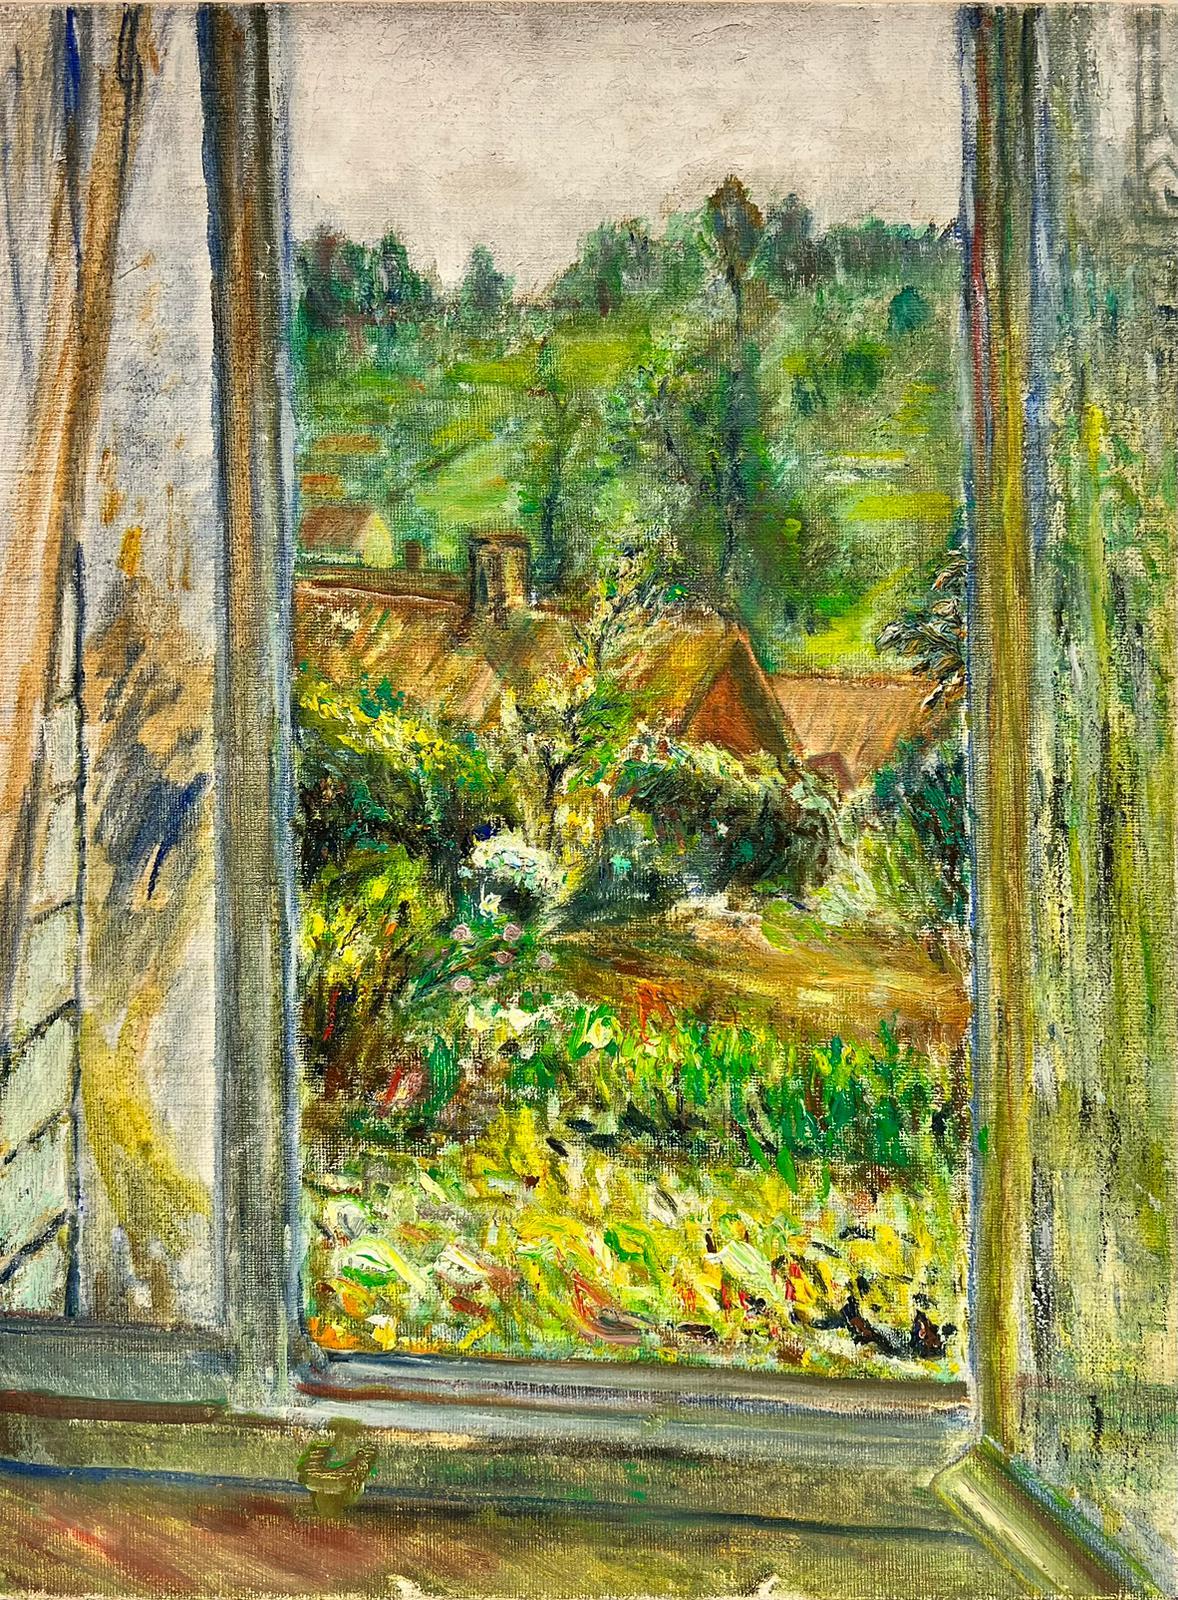 Landscape Painting 1900's French Impressionist - Tableau impressionniste français rêveur d'une fenêtre sur un paysage de jardin vert